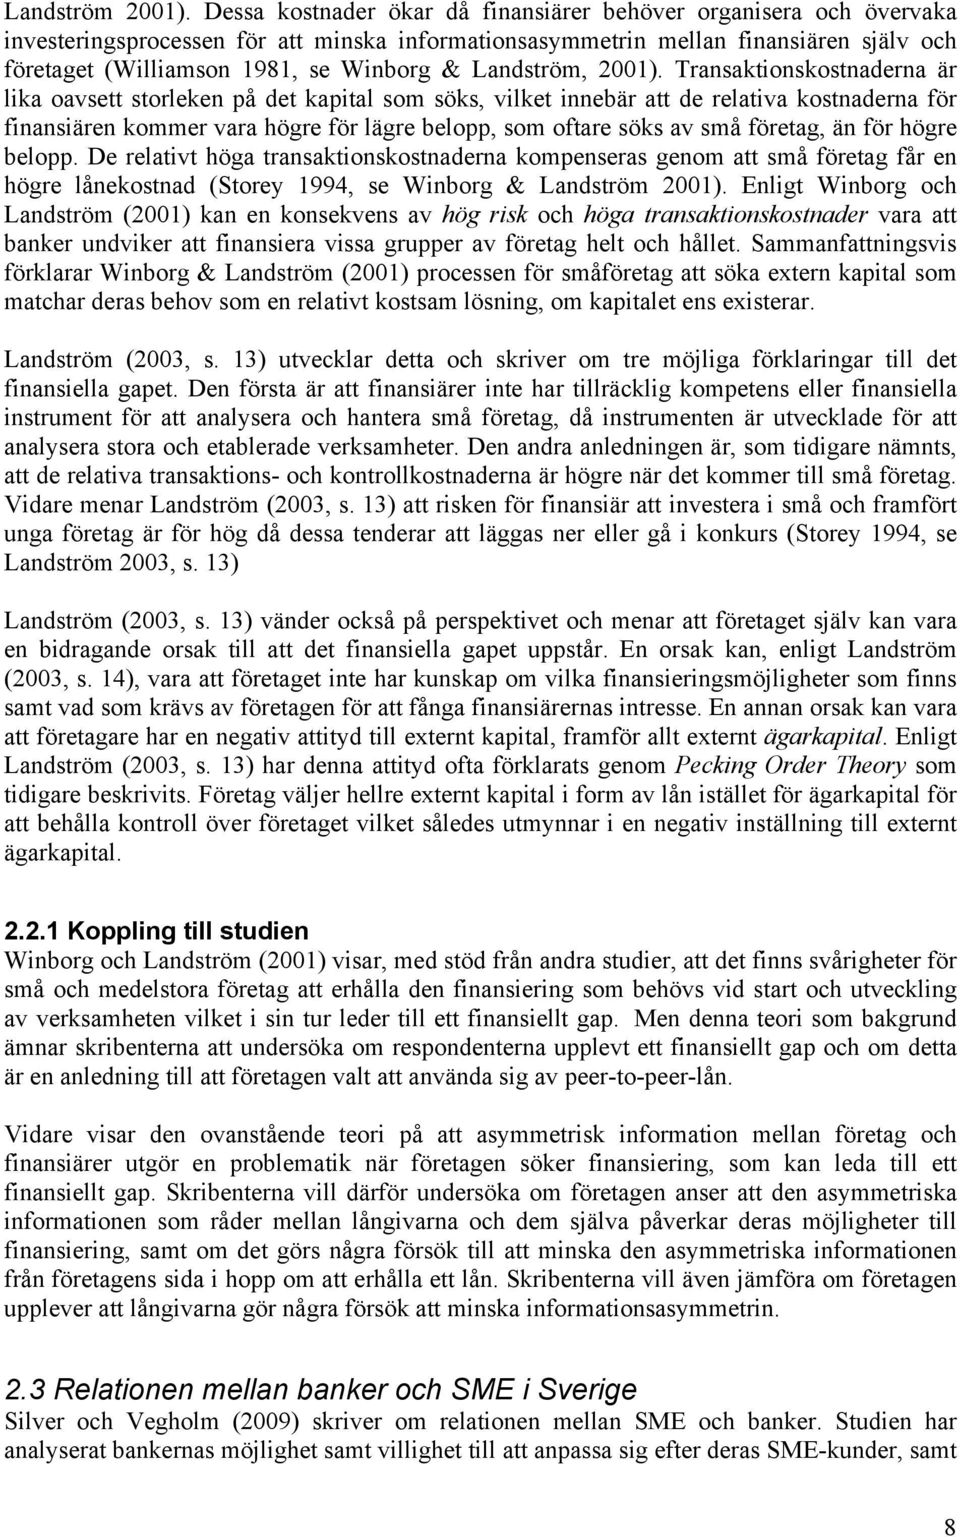 Landström, 2001).